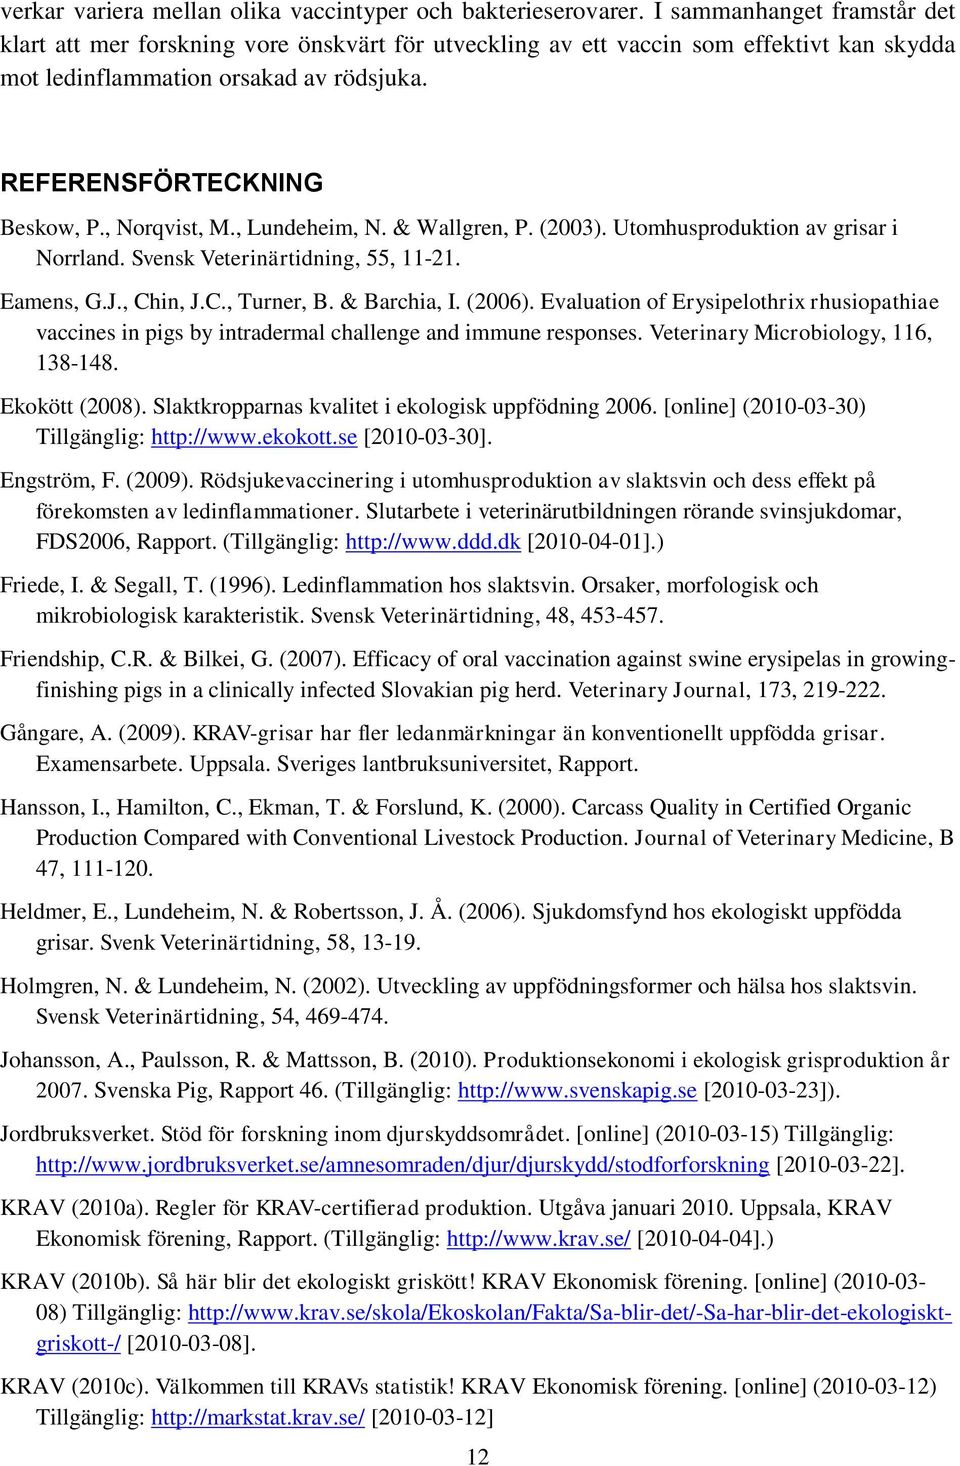 , Norqvist, M., Lundeheim, N. & Wallgren, P. (2003). Utomhusproduktion av grisar i Norrland. Svensk Veterinärtidning, 55, 11-21. Eamens, G.J., Chin, J.C., Turner, B. & Barchia, I. (2006).